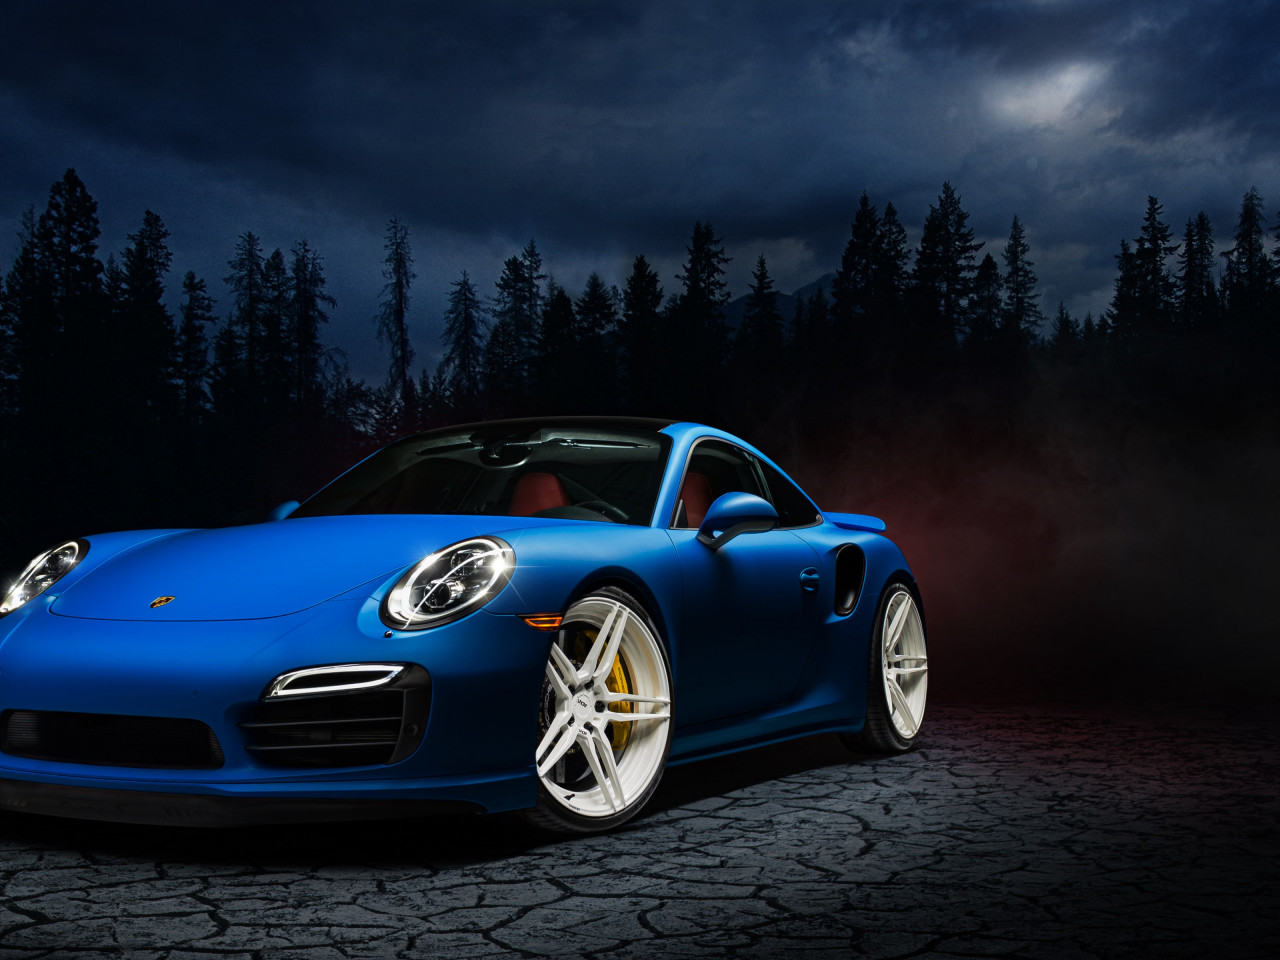 Porsche 911 blue wallpaper 1280x960